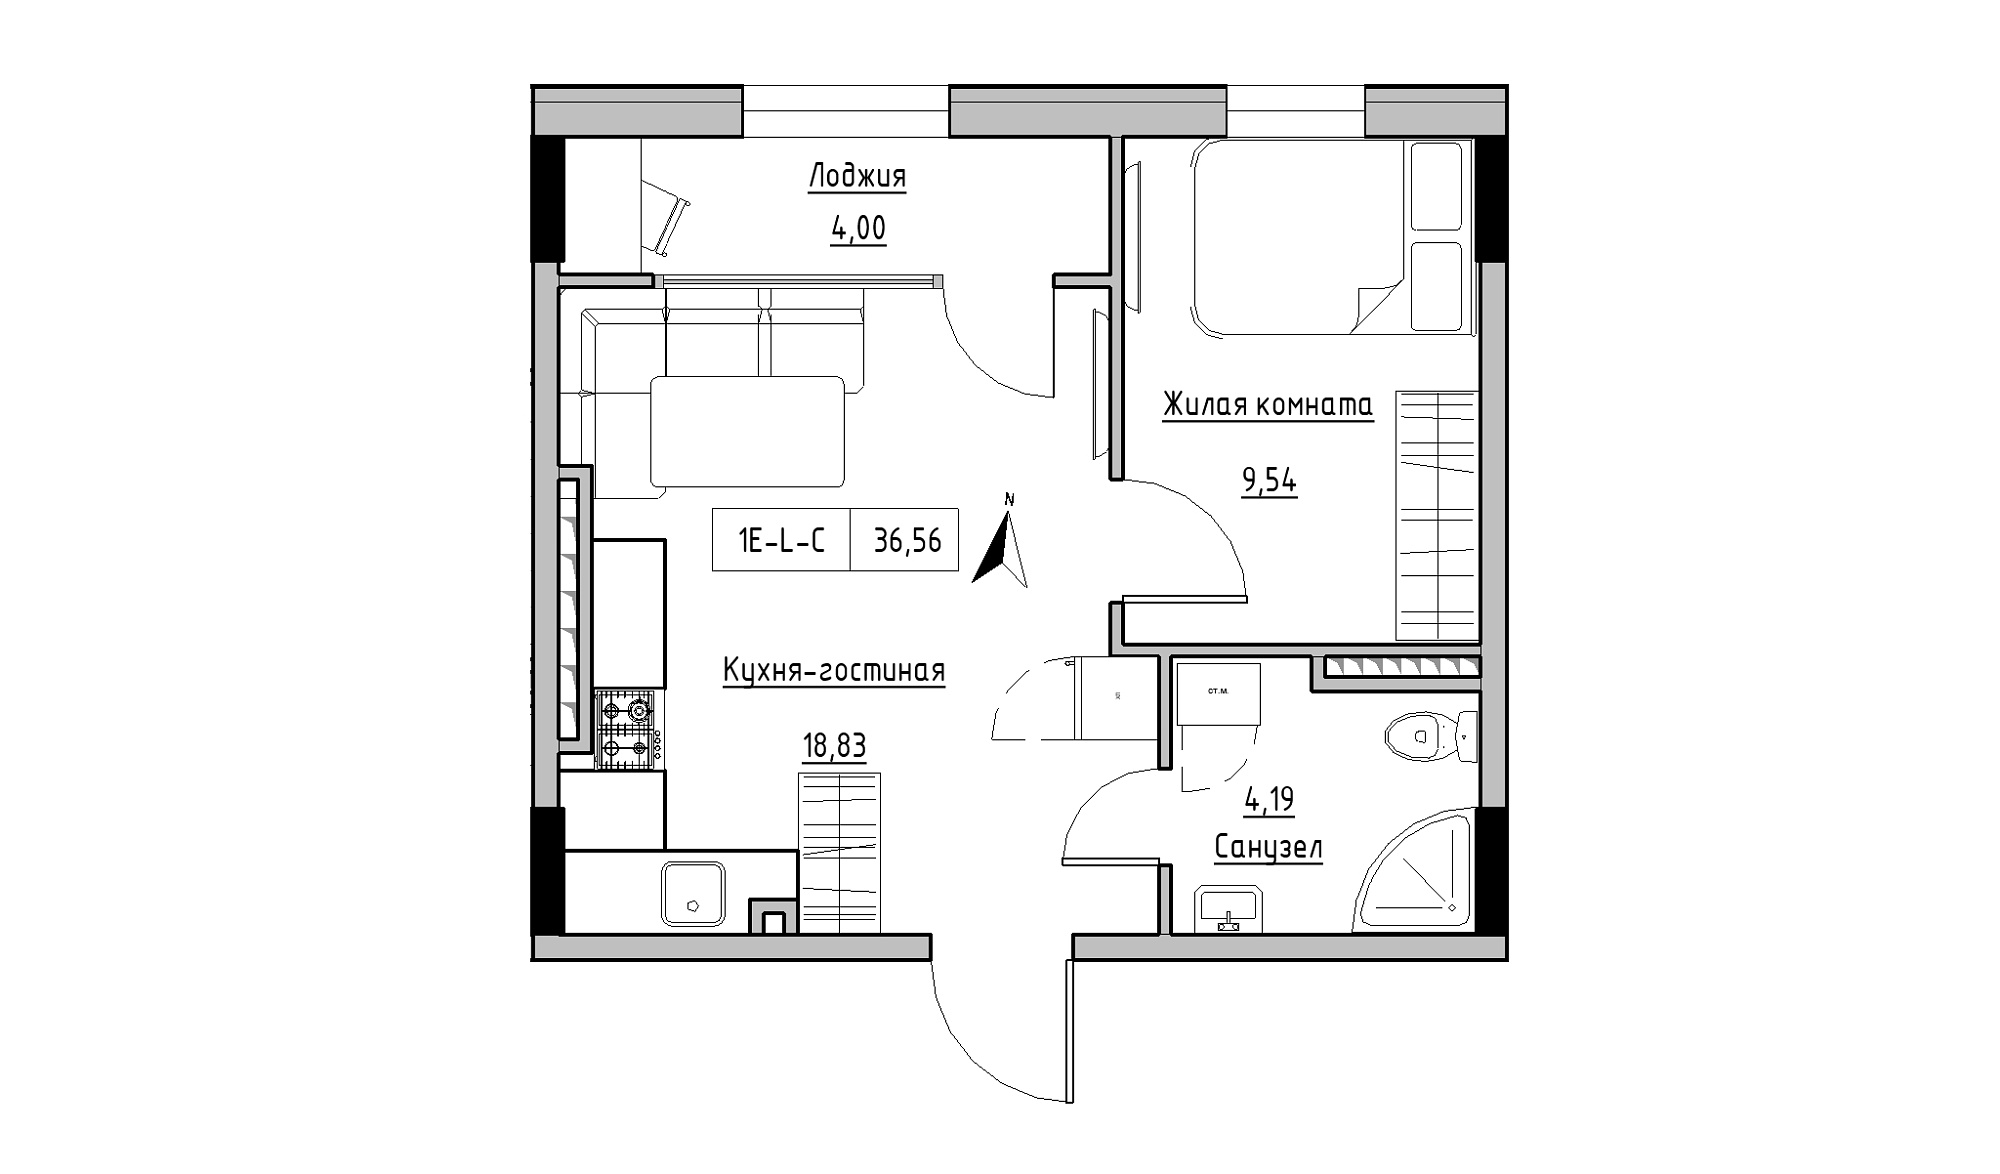 Планировка 1-к квартира площей 36.56м2, KS-025-06/0008.